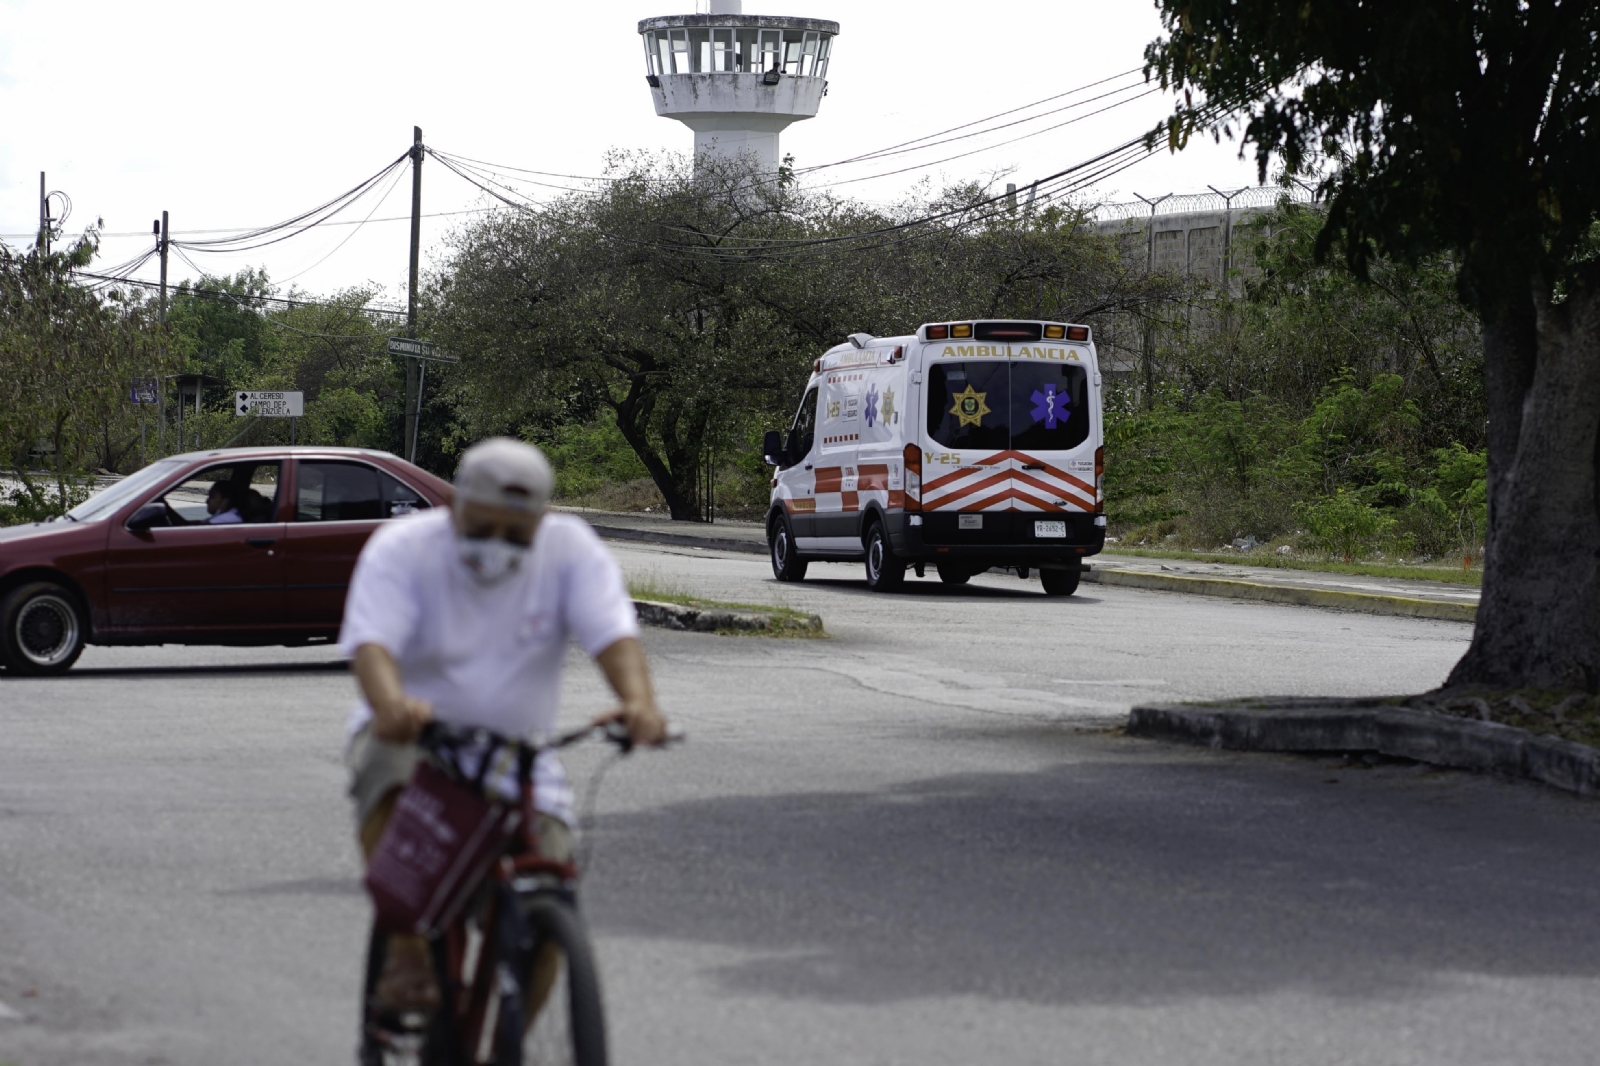 187 mil pesos cuesta mantener al año un reo en Yucatán: Inegi